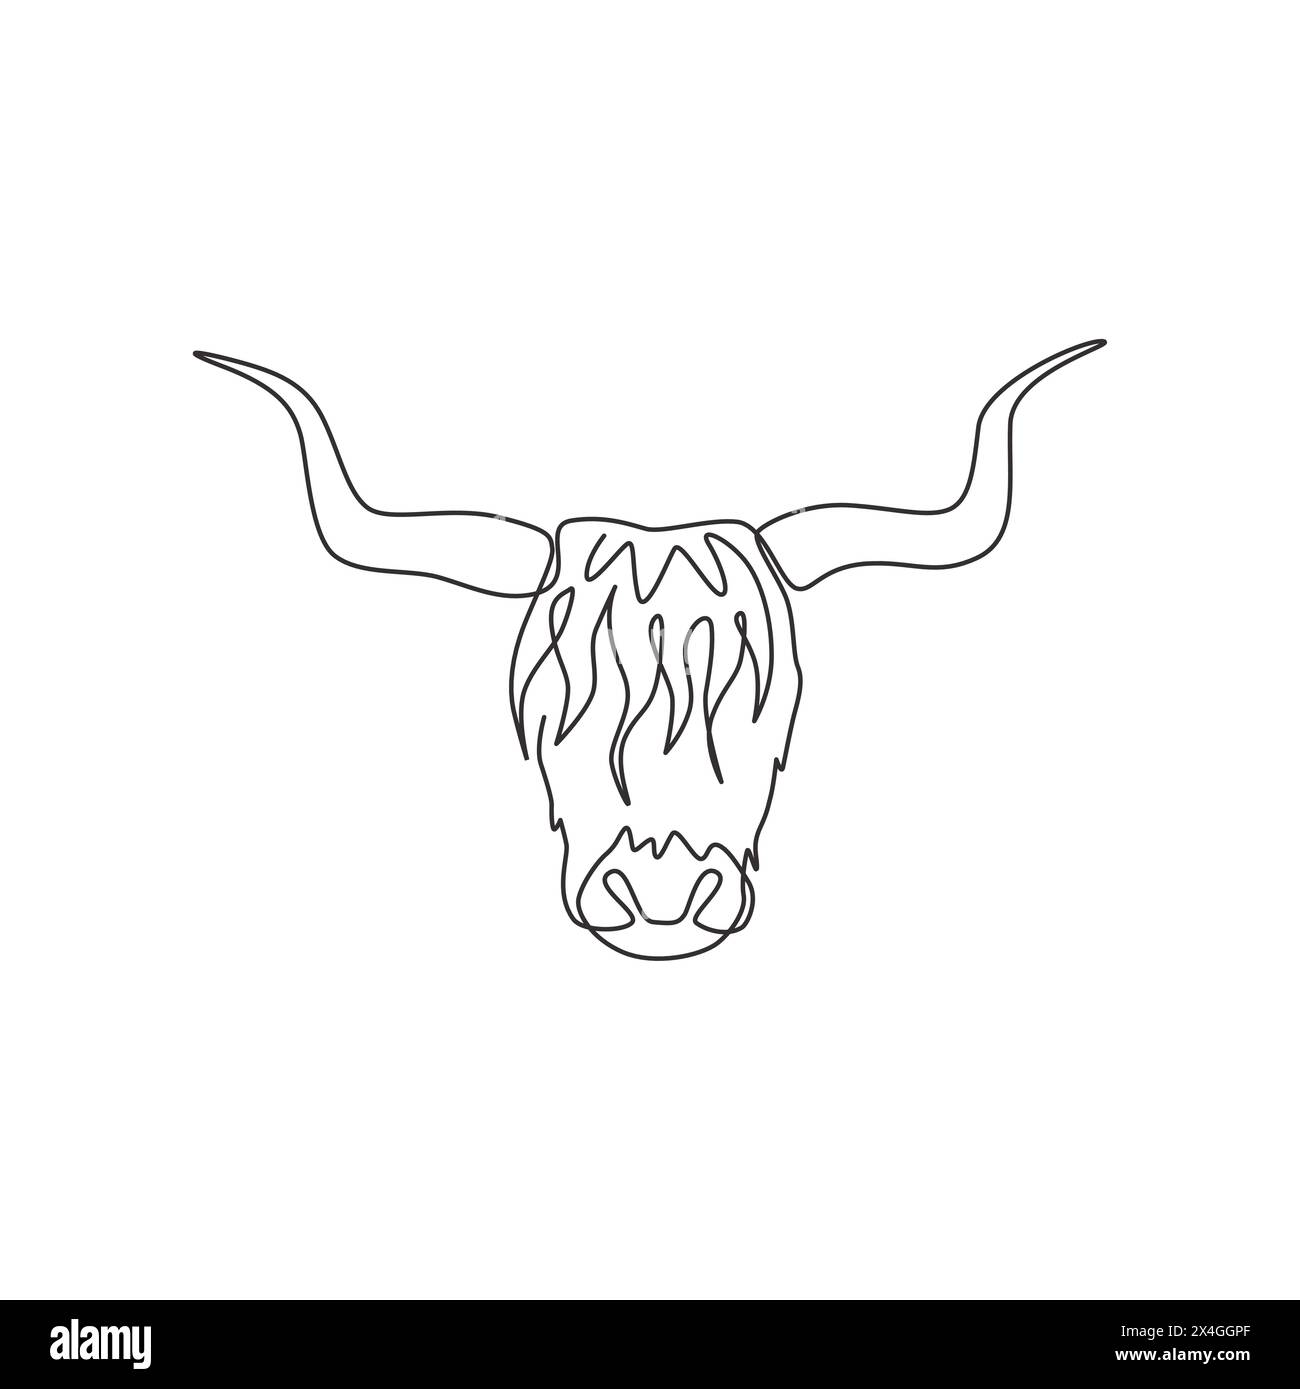 Dessin simple d'une ligne de tête de yak Manly pour l'identité de logo de l'entreprise. Concept de mascotte de mammifère de ferme de vache pour icône de zoo national. Dessin au trait continu moderne Illustration de Vecteur